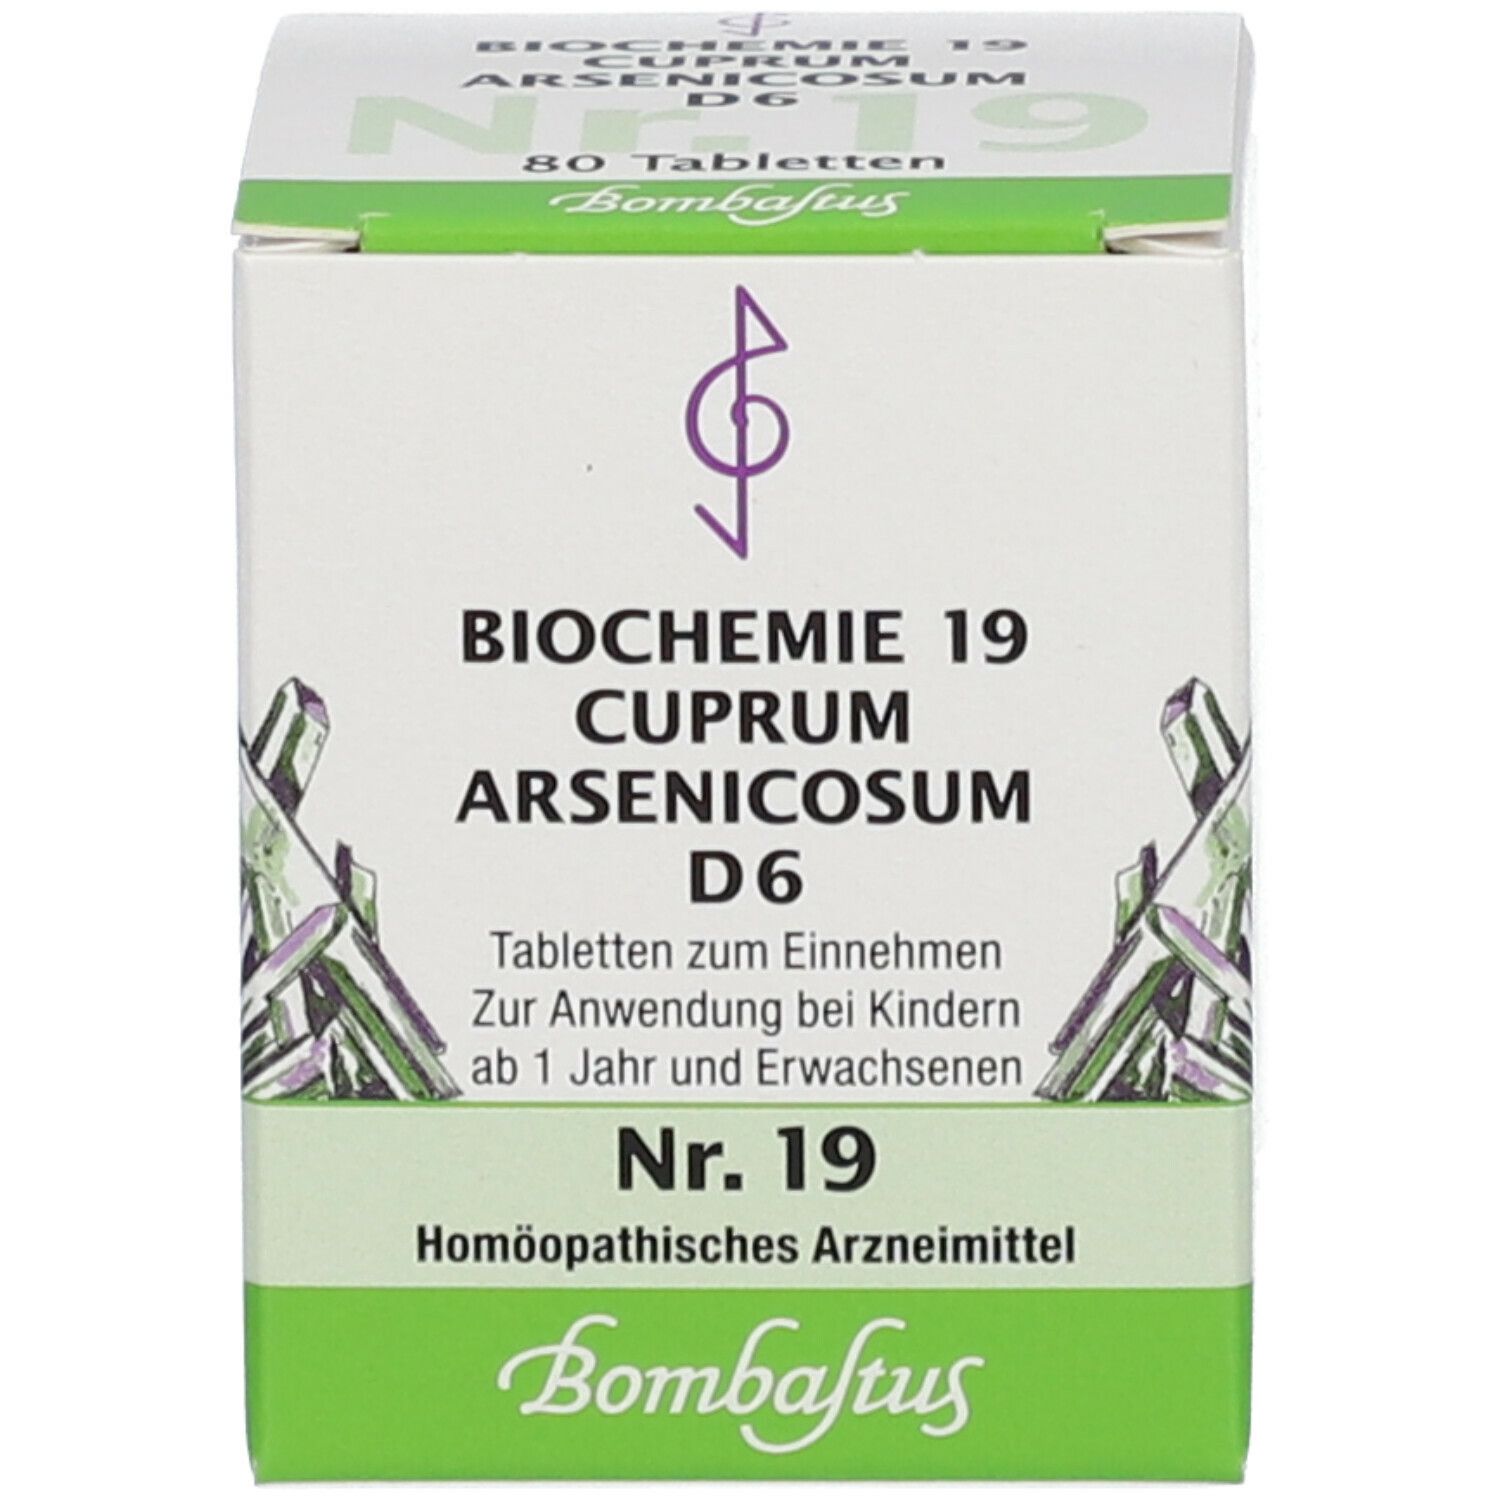 Bombastus Biochemie 19 Cuprum arsenicosum D 6 Tabletten